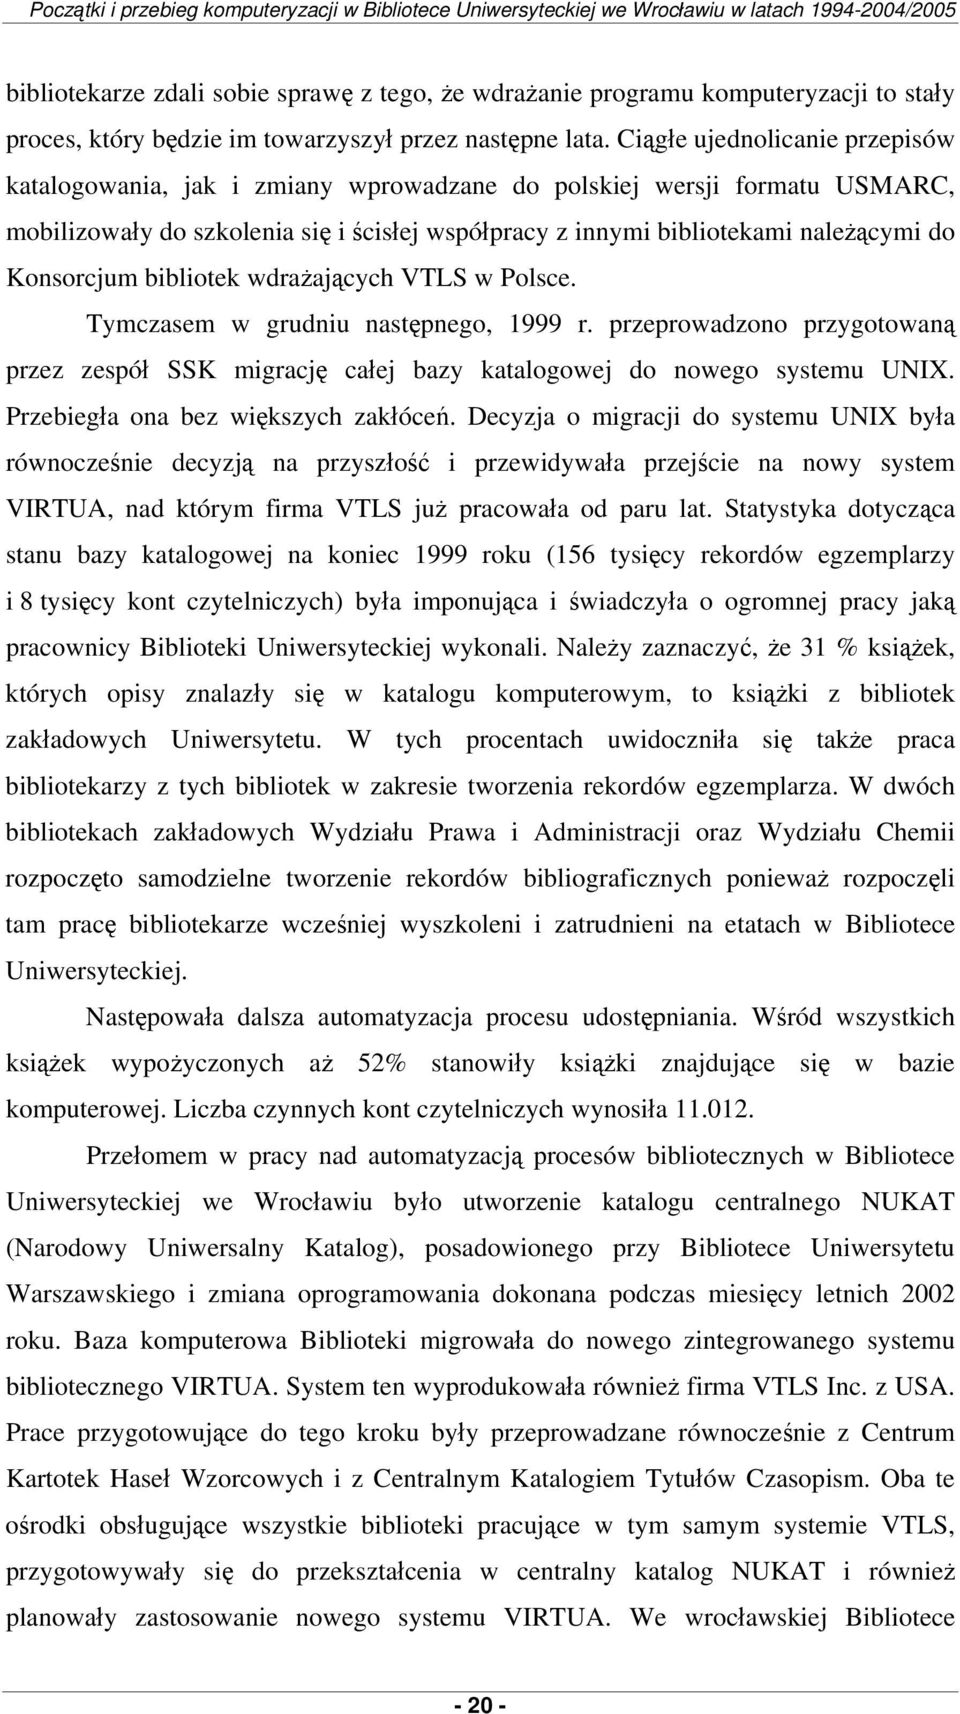 Ciągłe ujednolicanie przepisów katalogowania, jak i zmiany wprowadzane do polskiej wersji formatu USMARC, mobilizowały do szkolenia się i ścisłej współpracy z innymi bibliotekami należącymi do